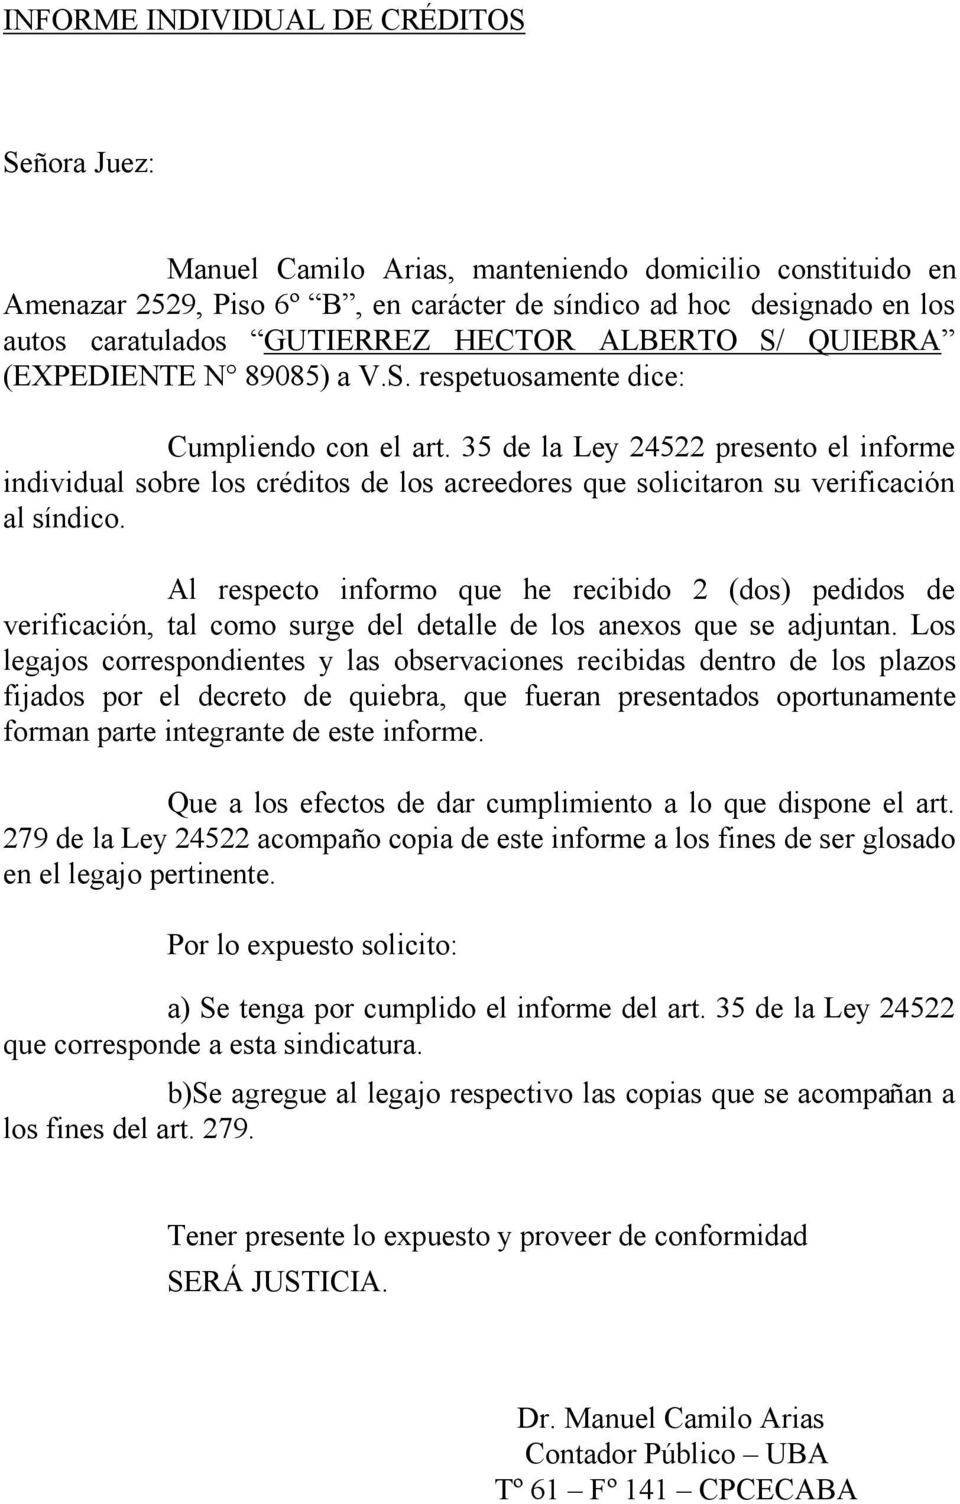 35 de la Ley 24522 presento el informe individual sobre los cre ditos de los acreedores que solicitaron su verificacion al s ndico.